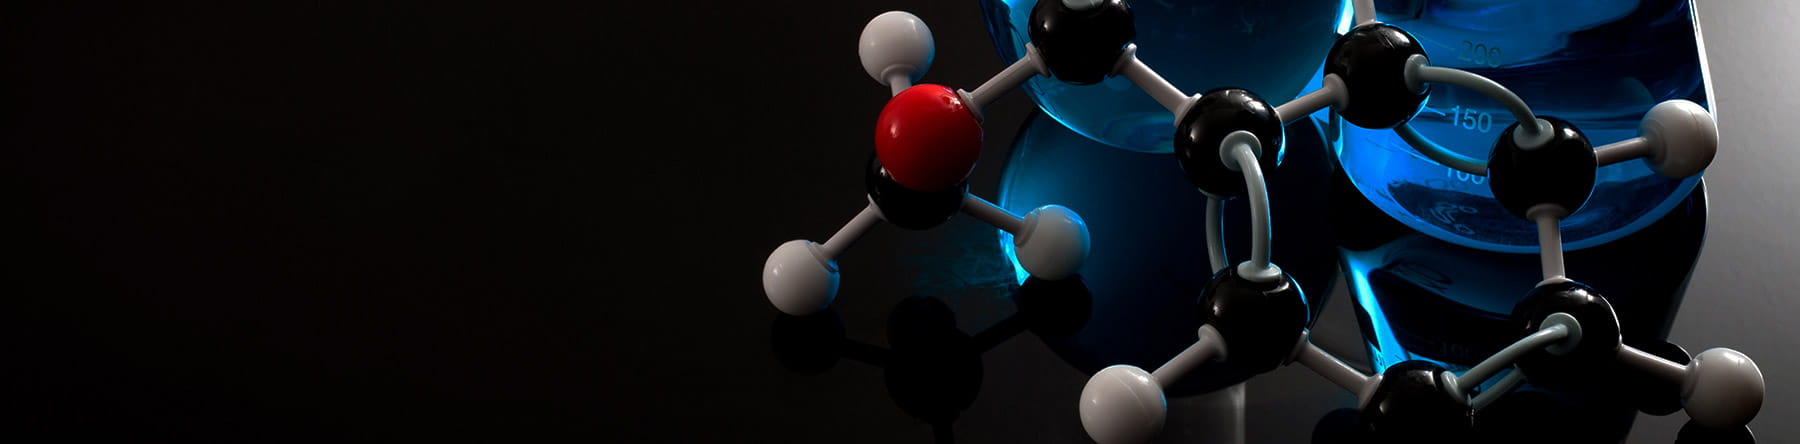 Science Shepherd Homeschool Chemistry Curriculum molecules and beakers